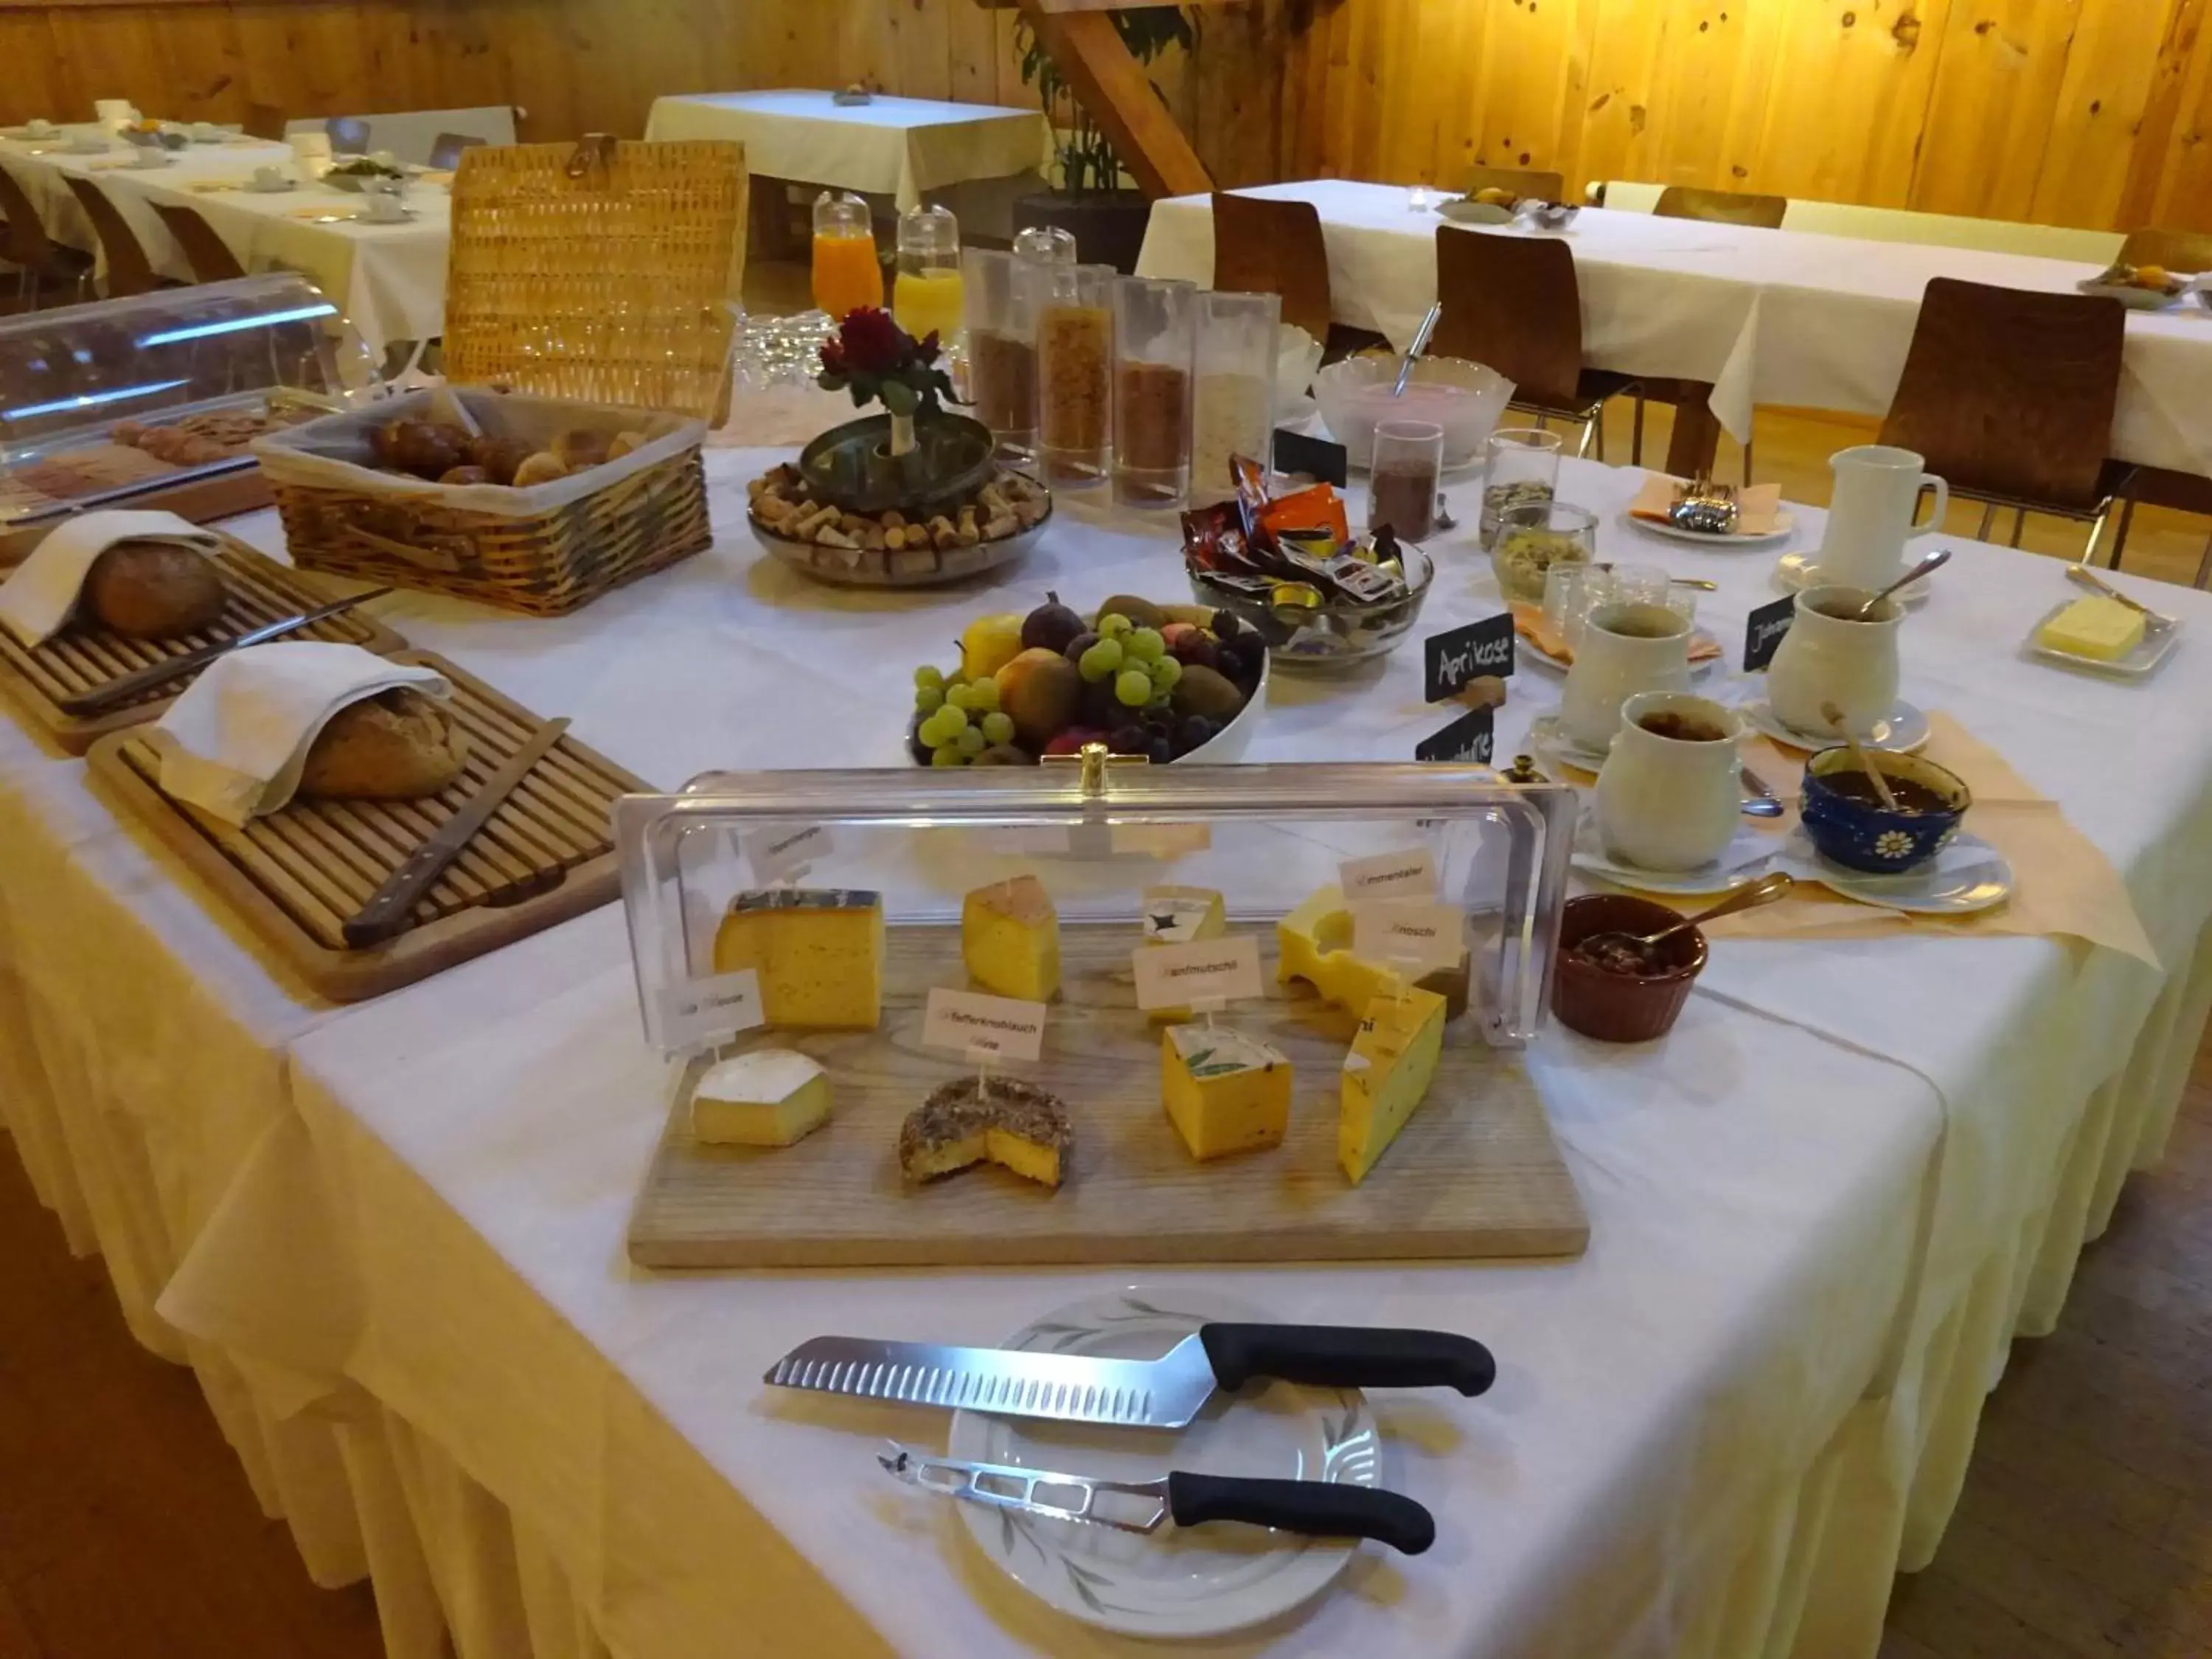 Buffet breakfast in Hotel Appenberg